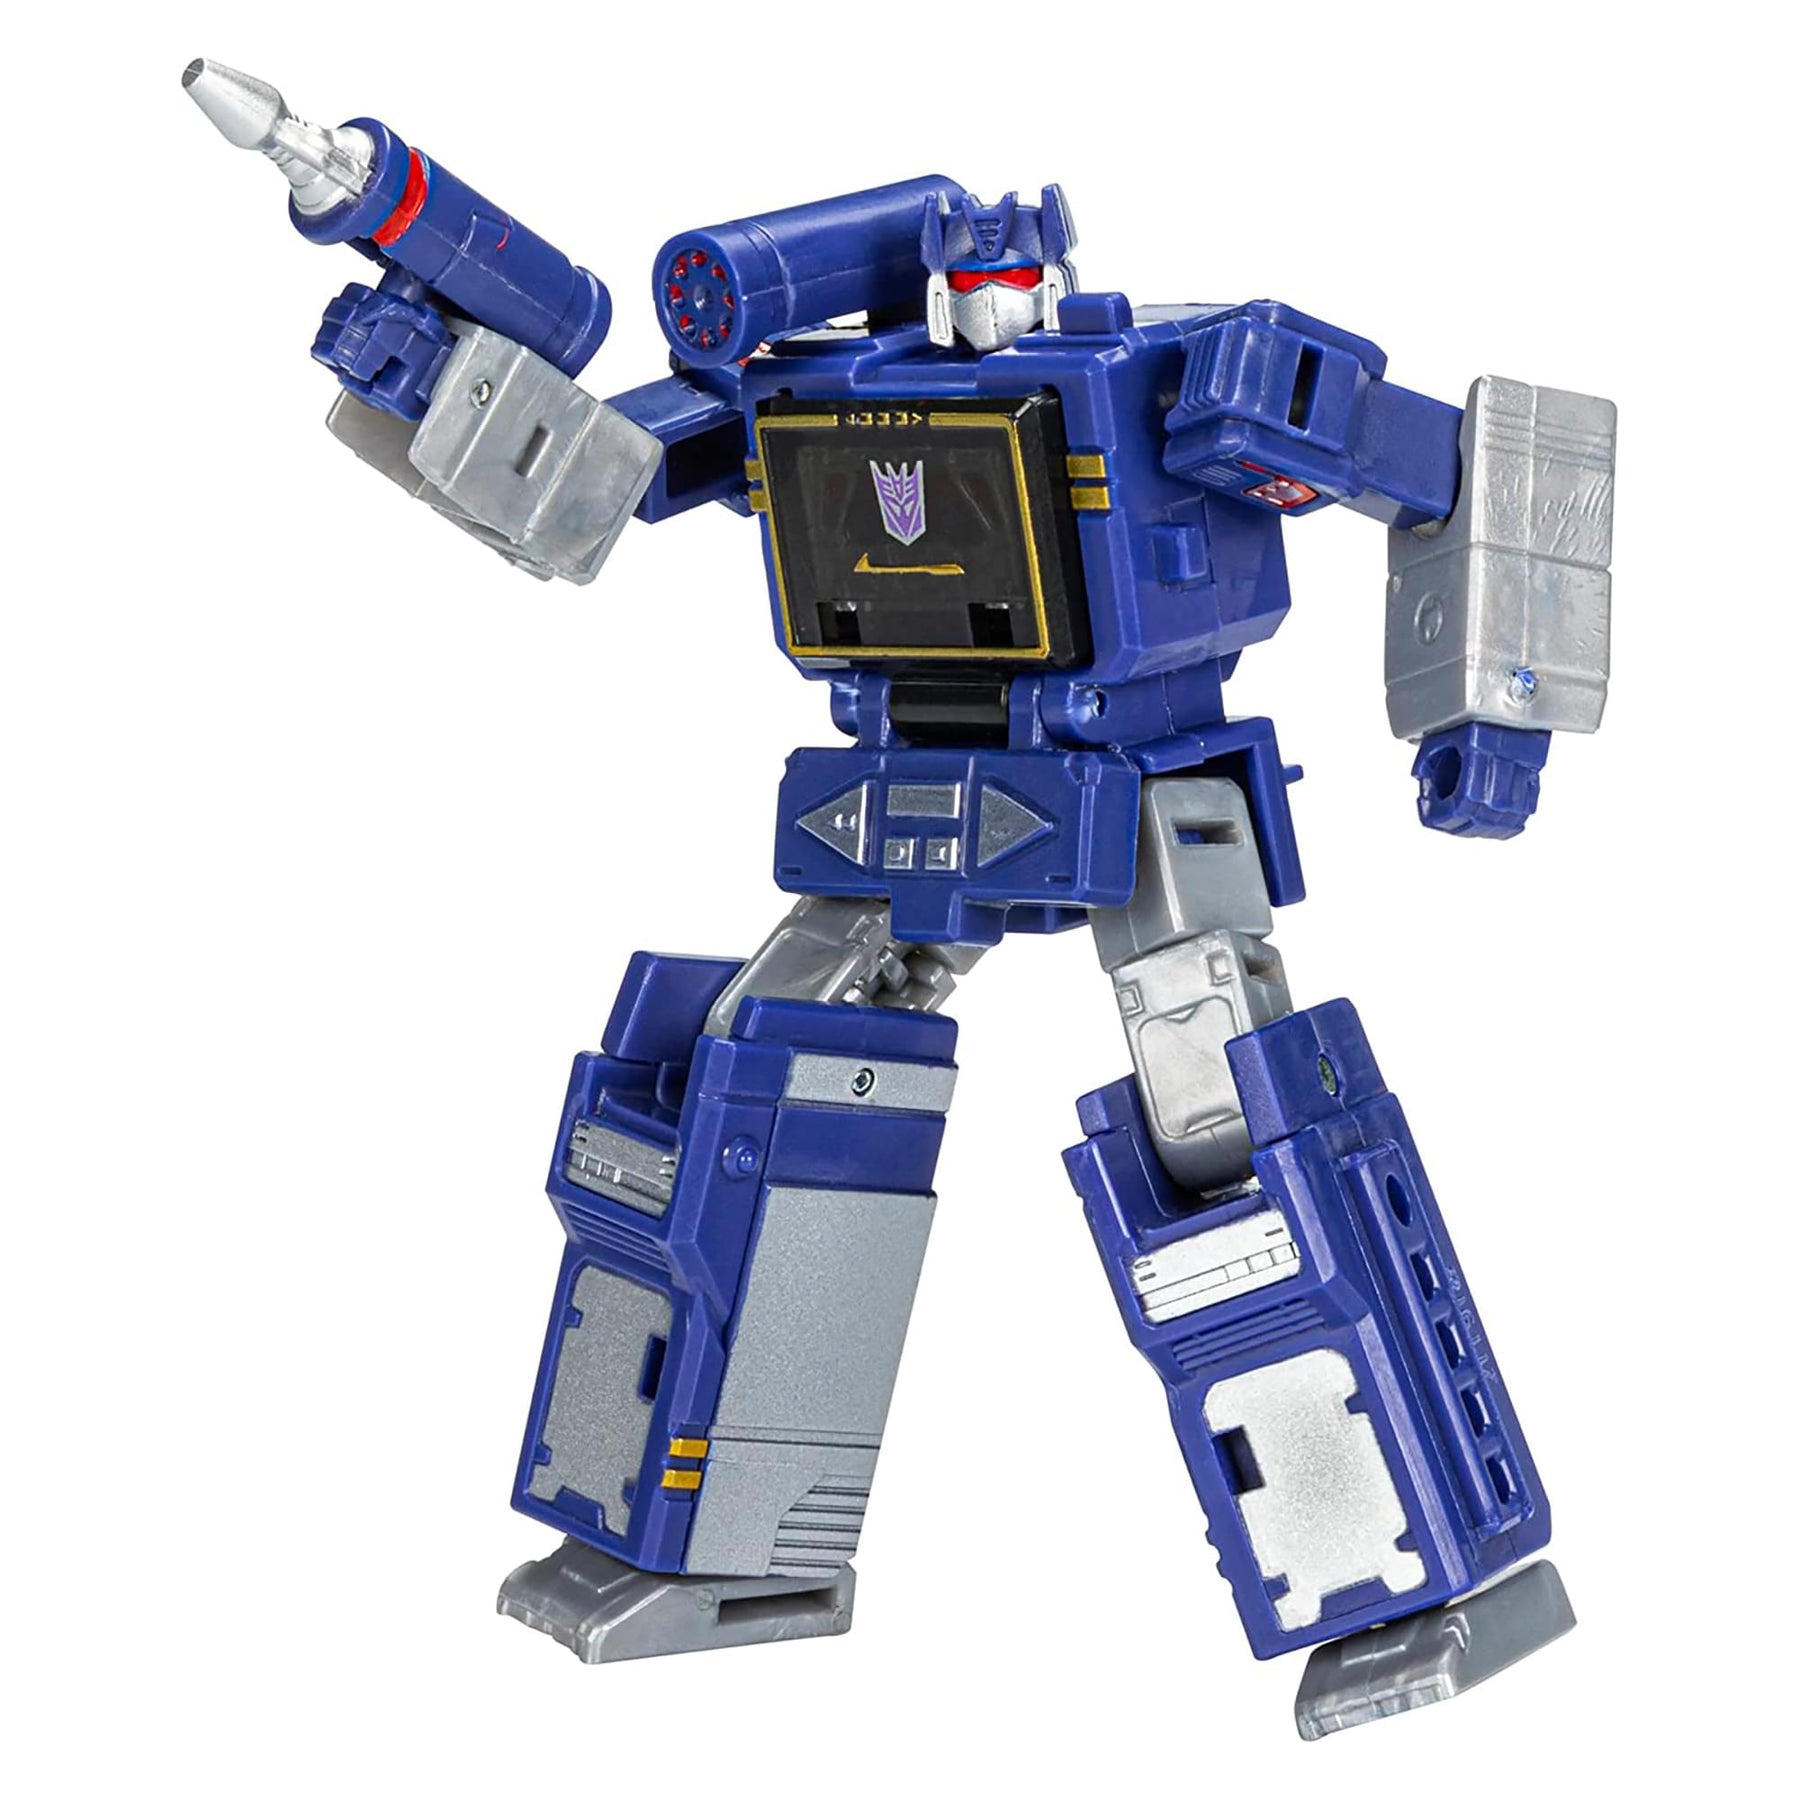 Transformers Prime: Soundwave- Robot mode, Soundwave super…